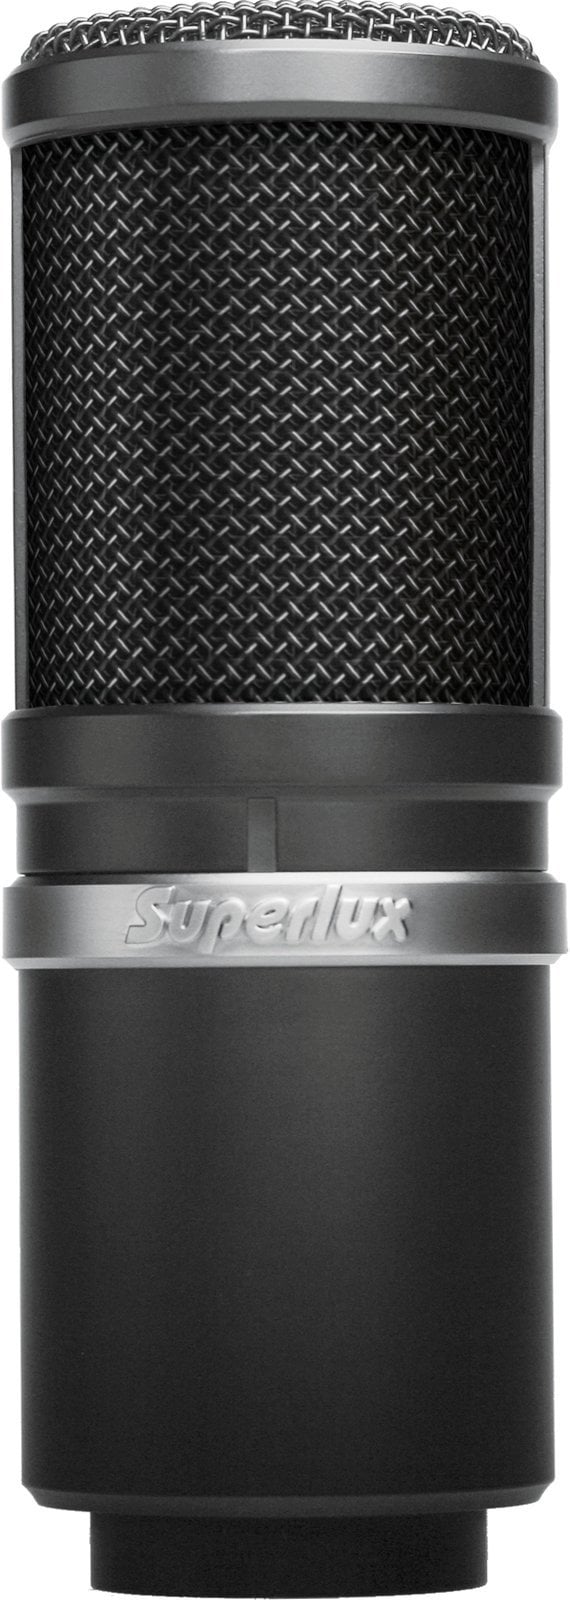 Microphone à condensateur pour studio Superlux E205 Microphone à condensateur pour studio